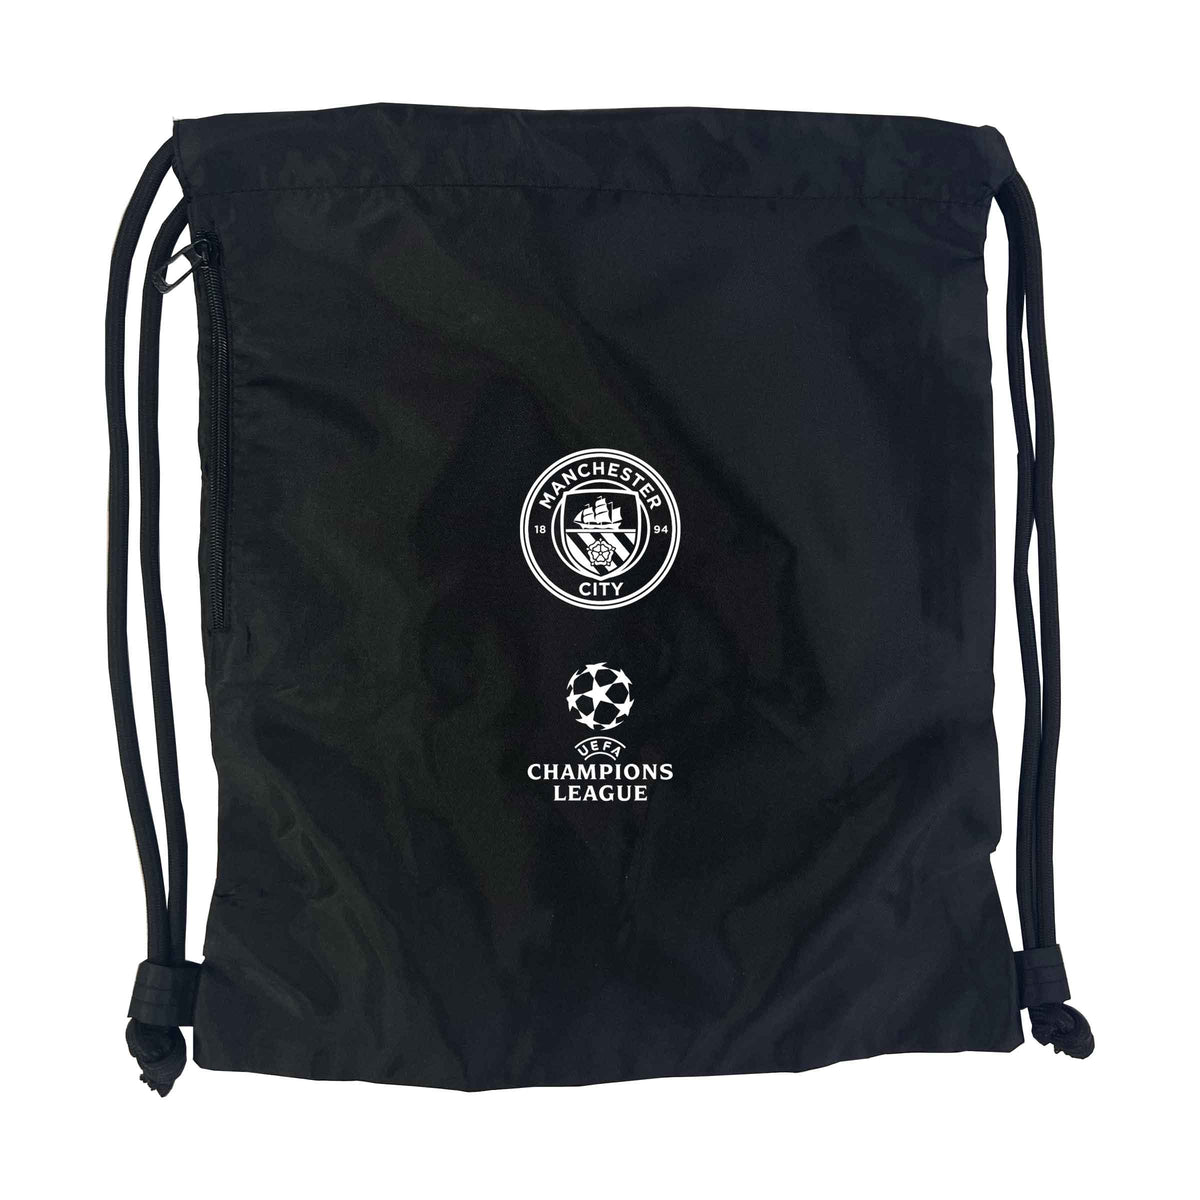 Champions League Manchester City Gym Bag Black